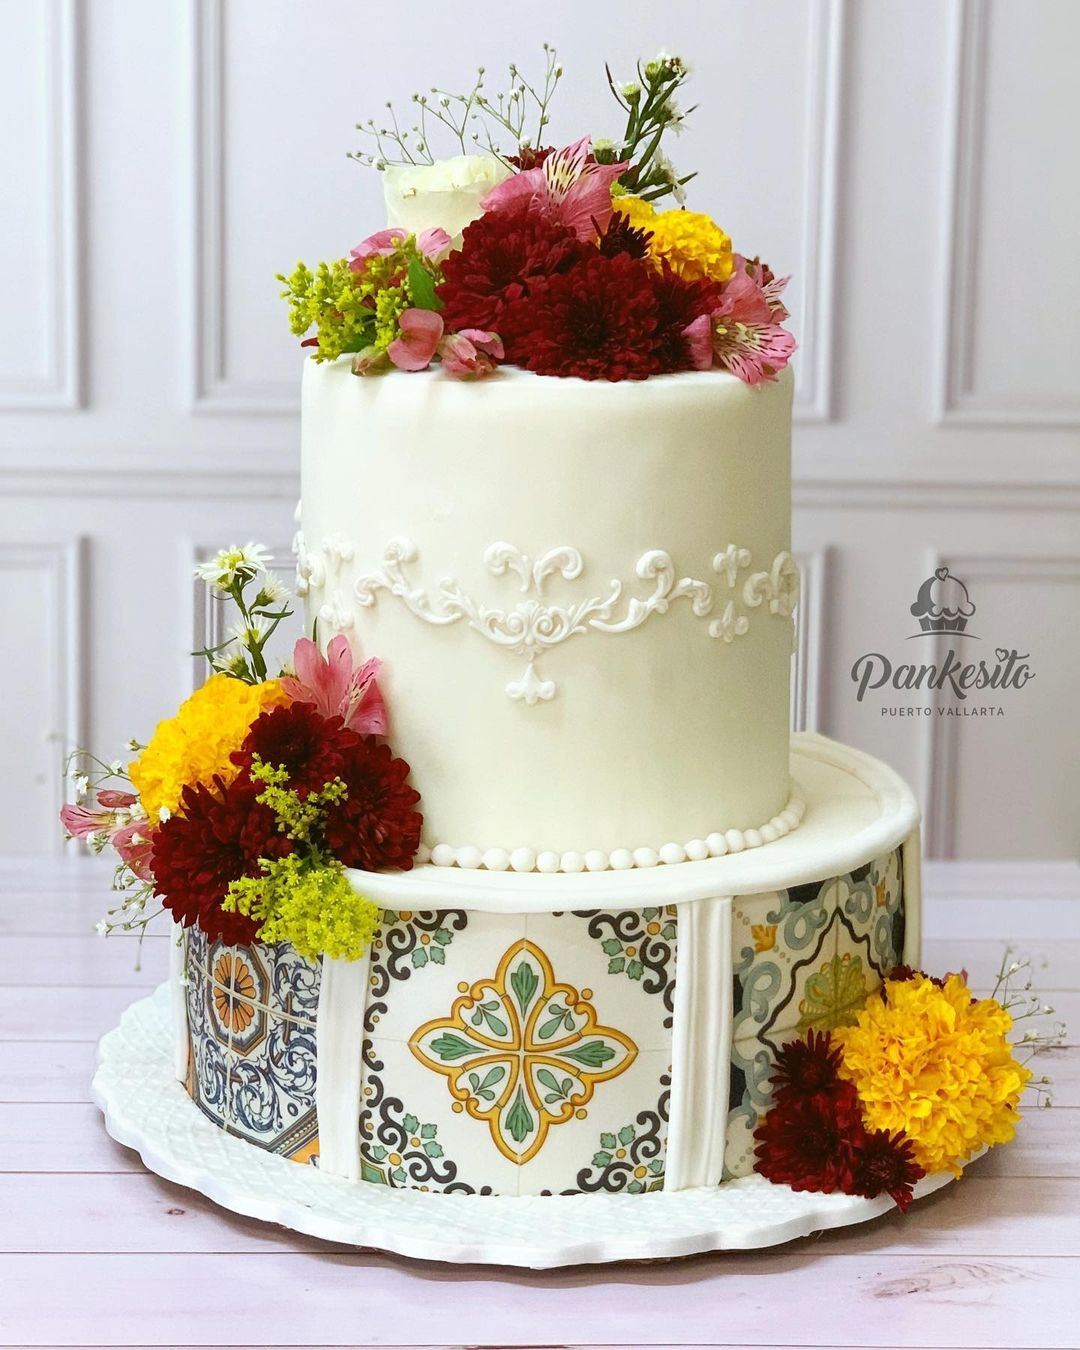 two mexican wedding cake via elpankesitopv